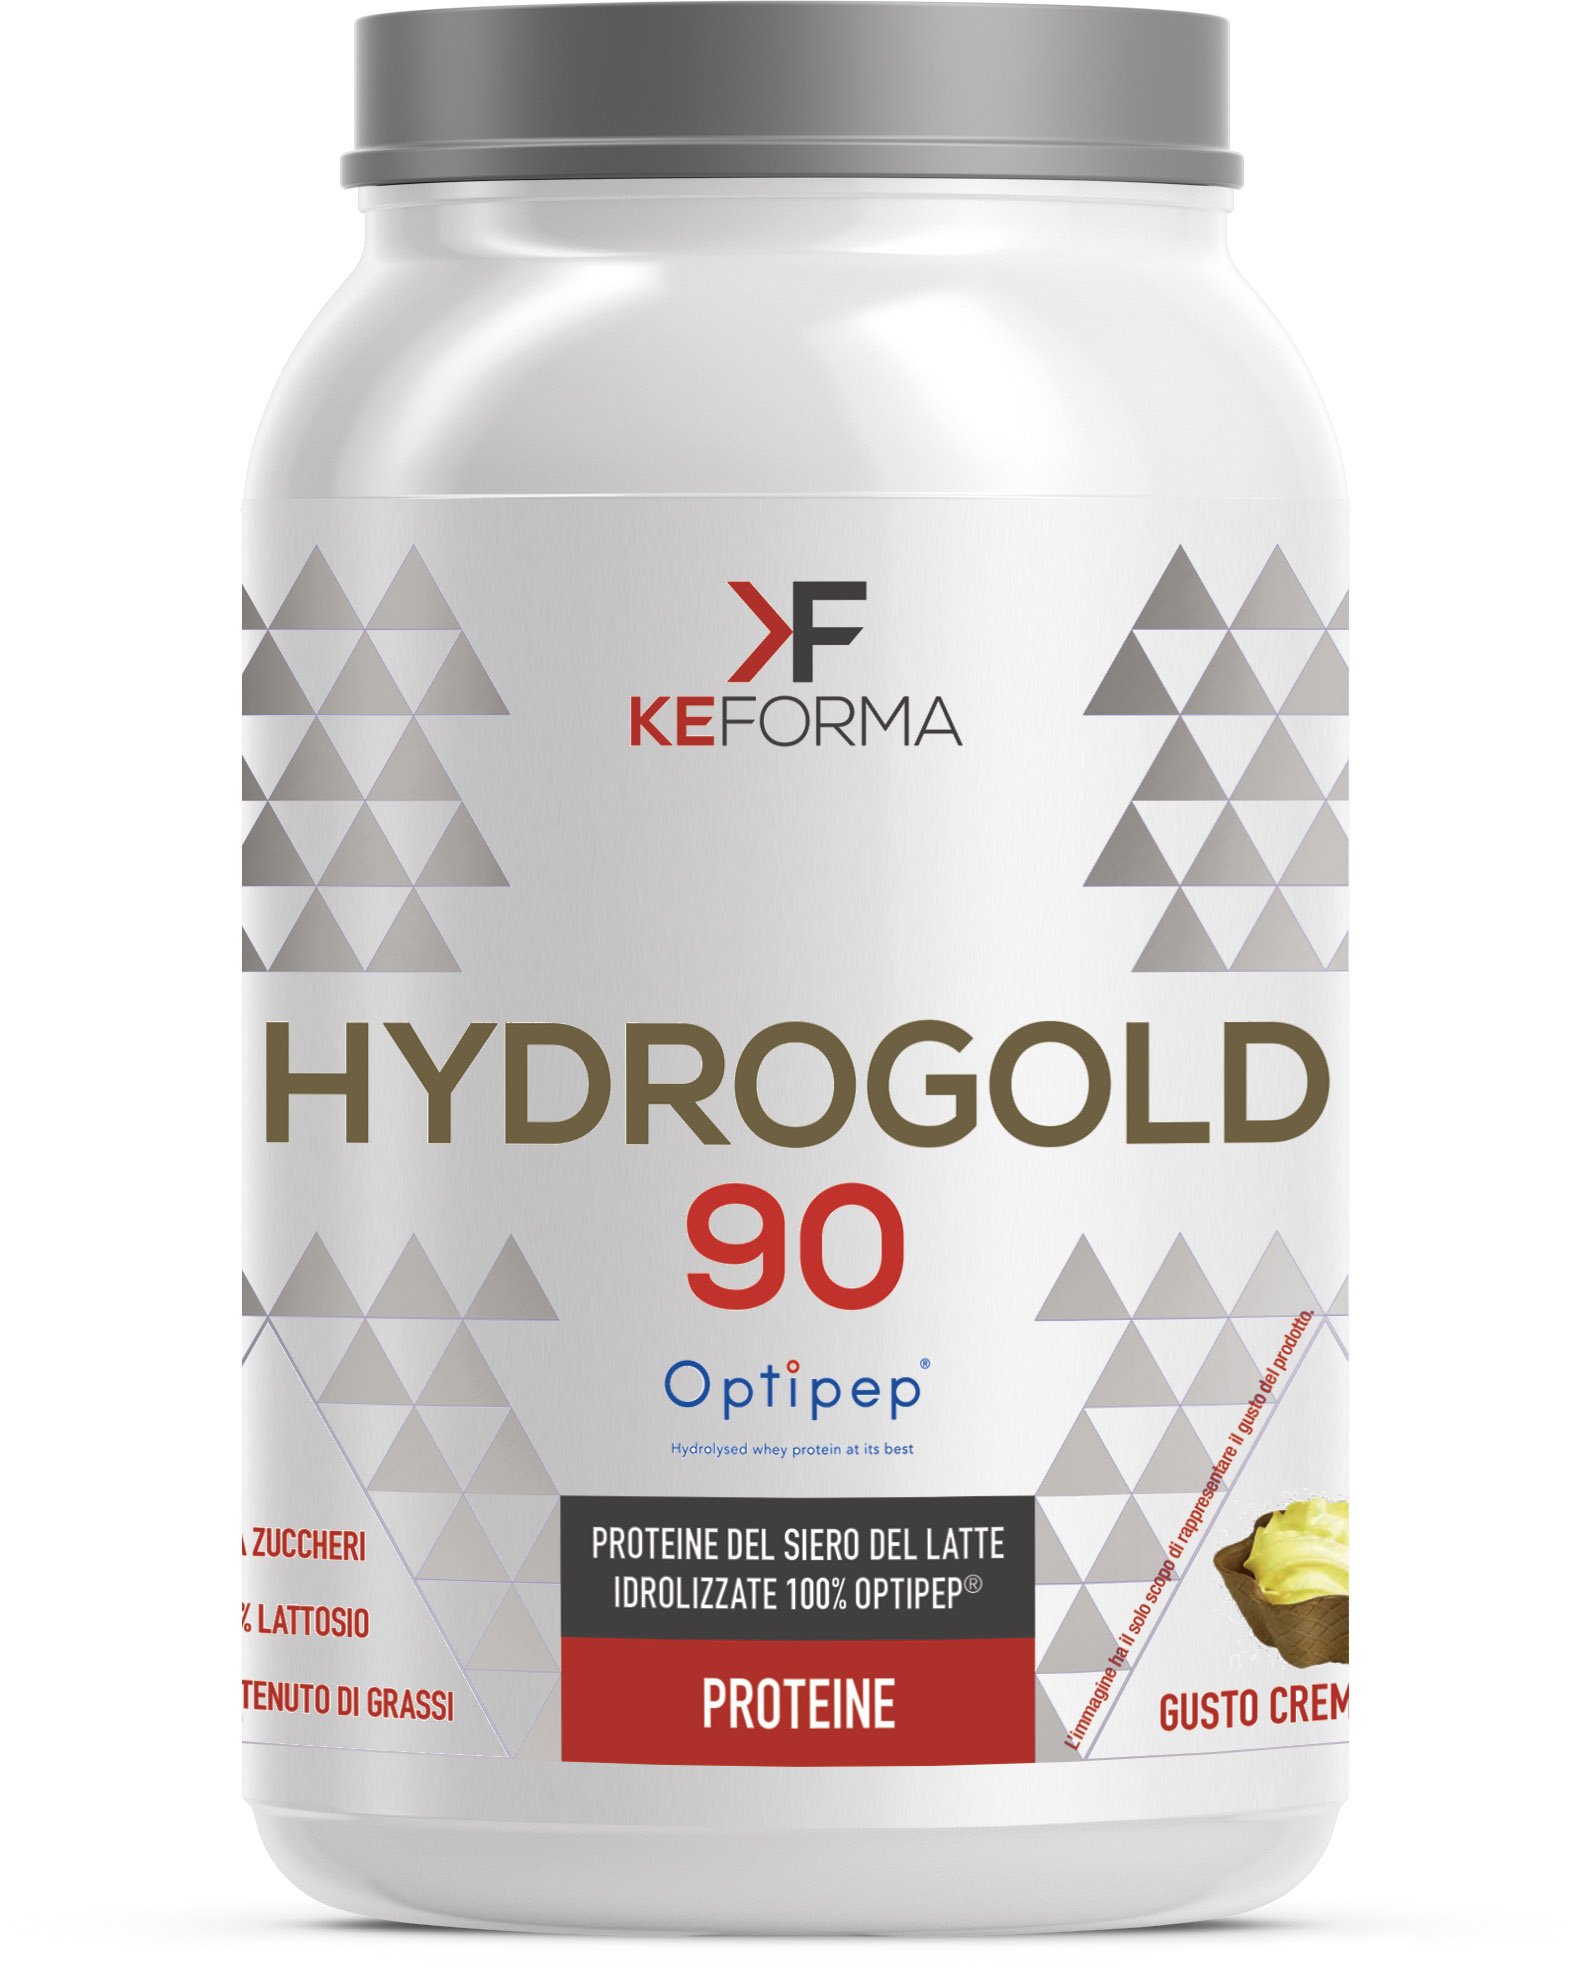 KeForma HYDROGOLD 90 Optipep Protein Serum etwas Milch Säuerungsmittel 100% Optipep - 900 g. Geschmack schwarz Chocolate